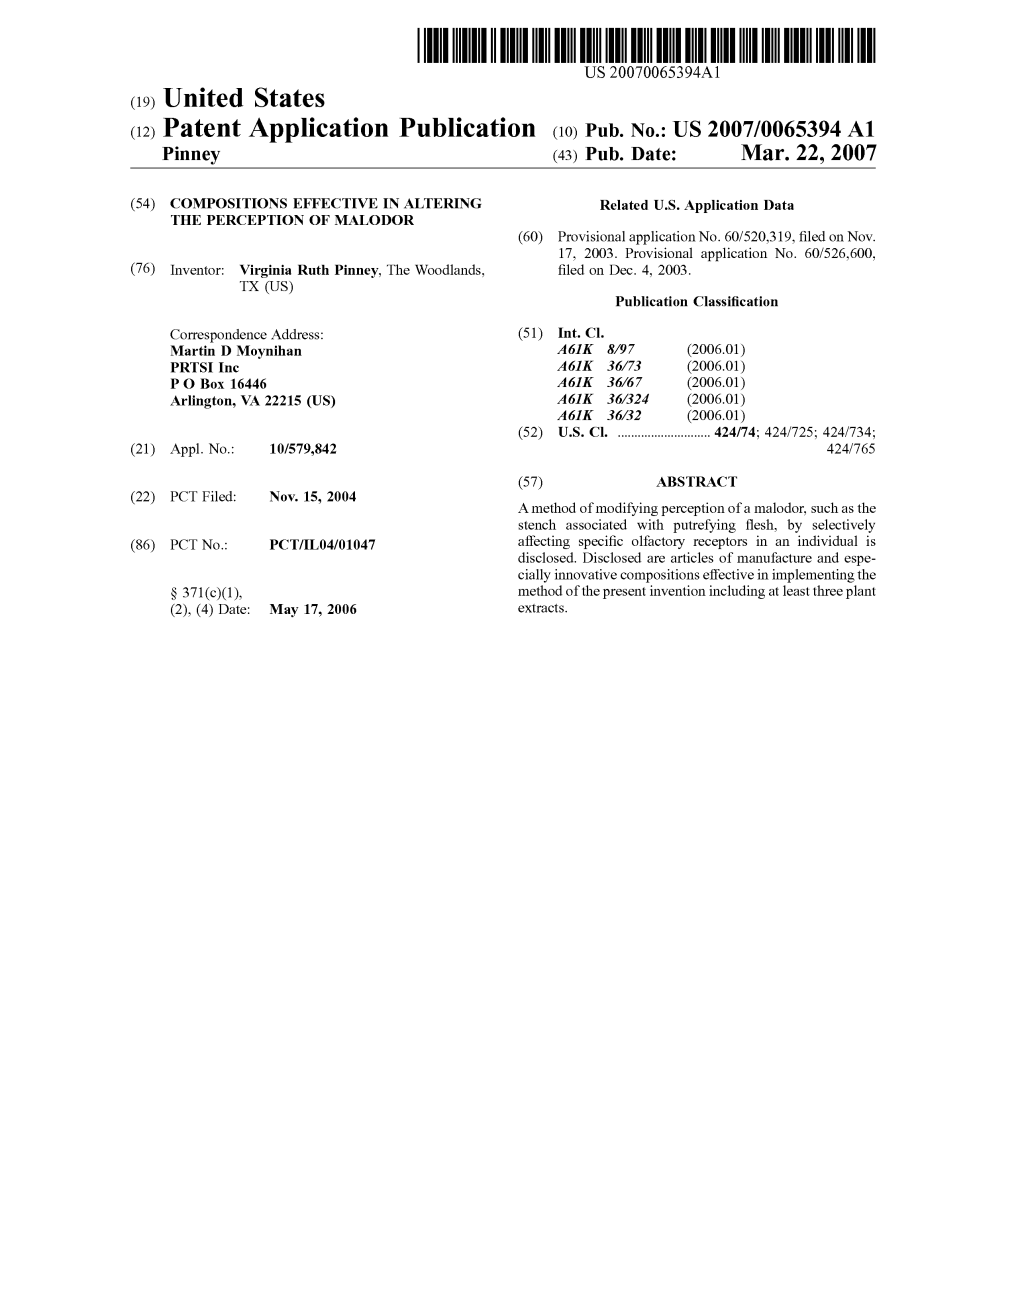 (12) Patent Application Publication (10) Pub. No.: US 2007/0065394A1 Pinney (43) Pub